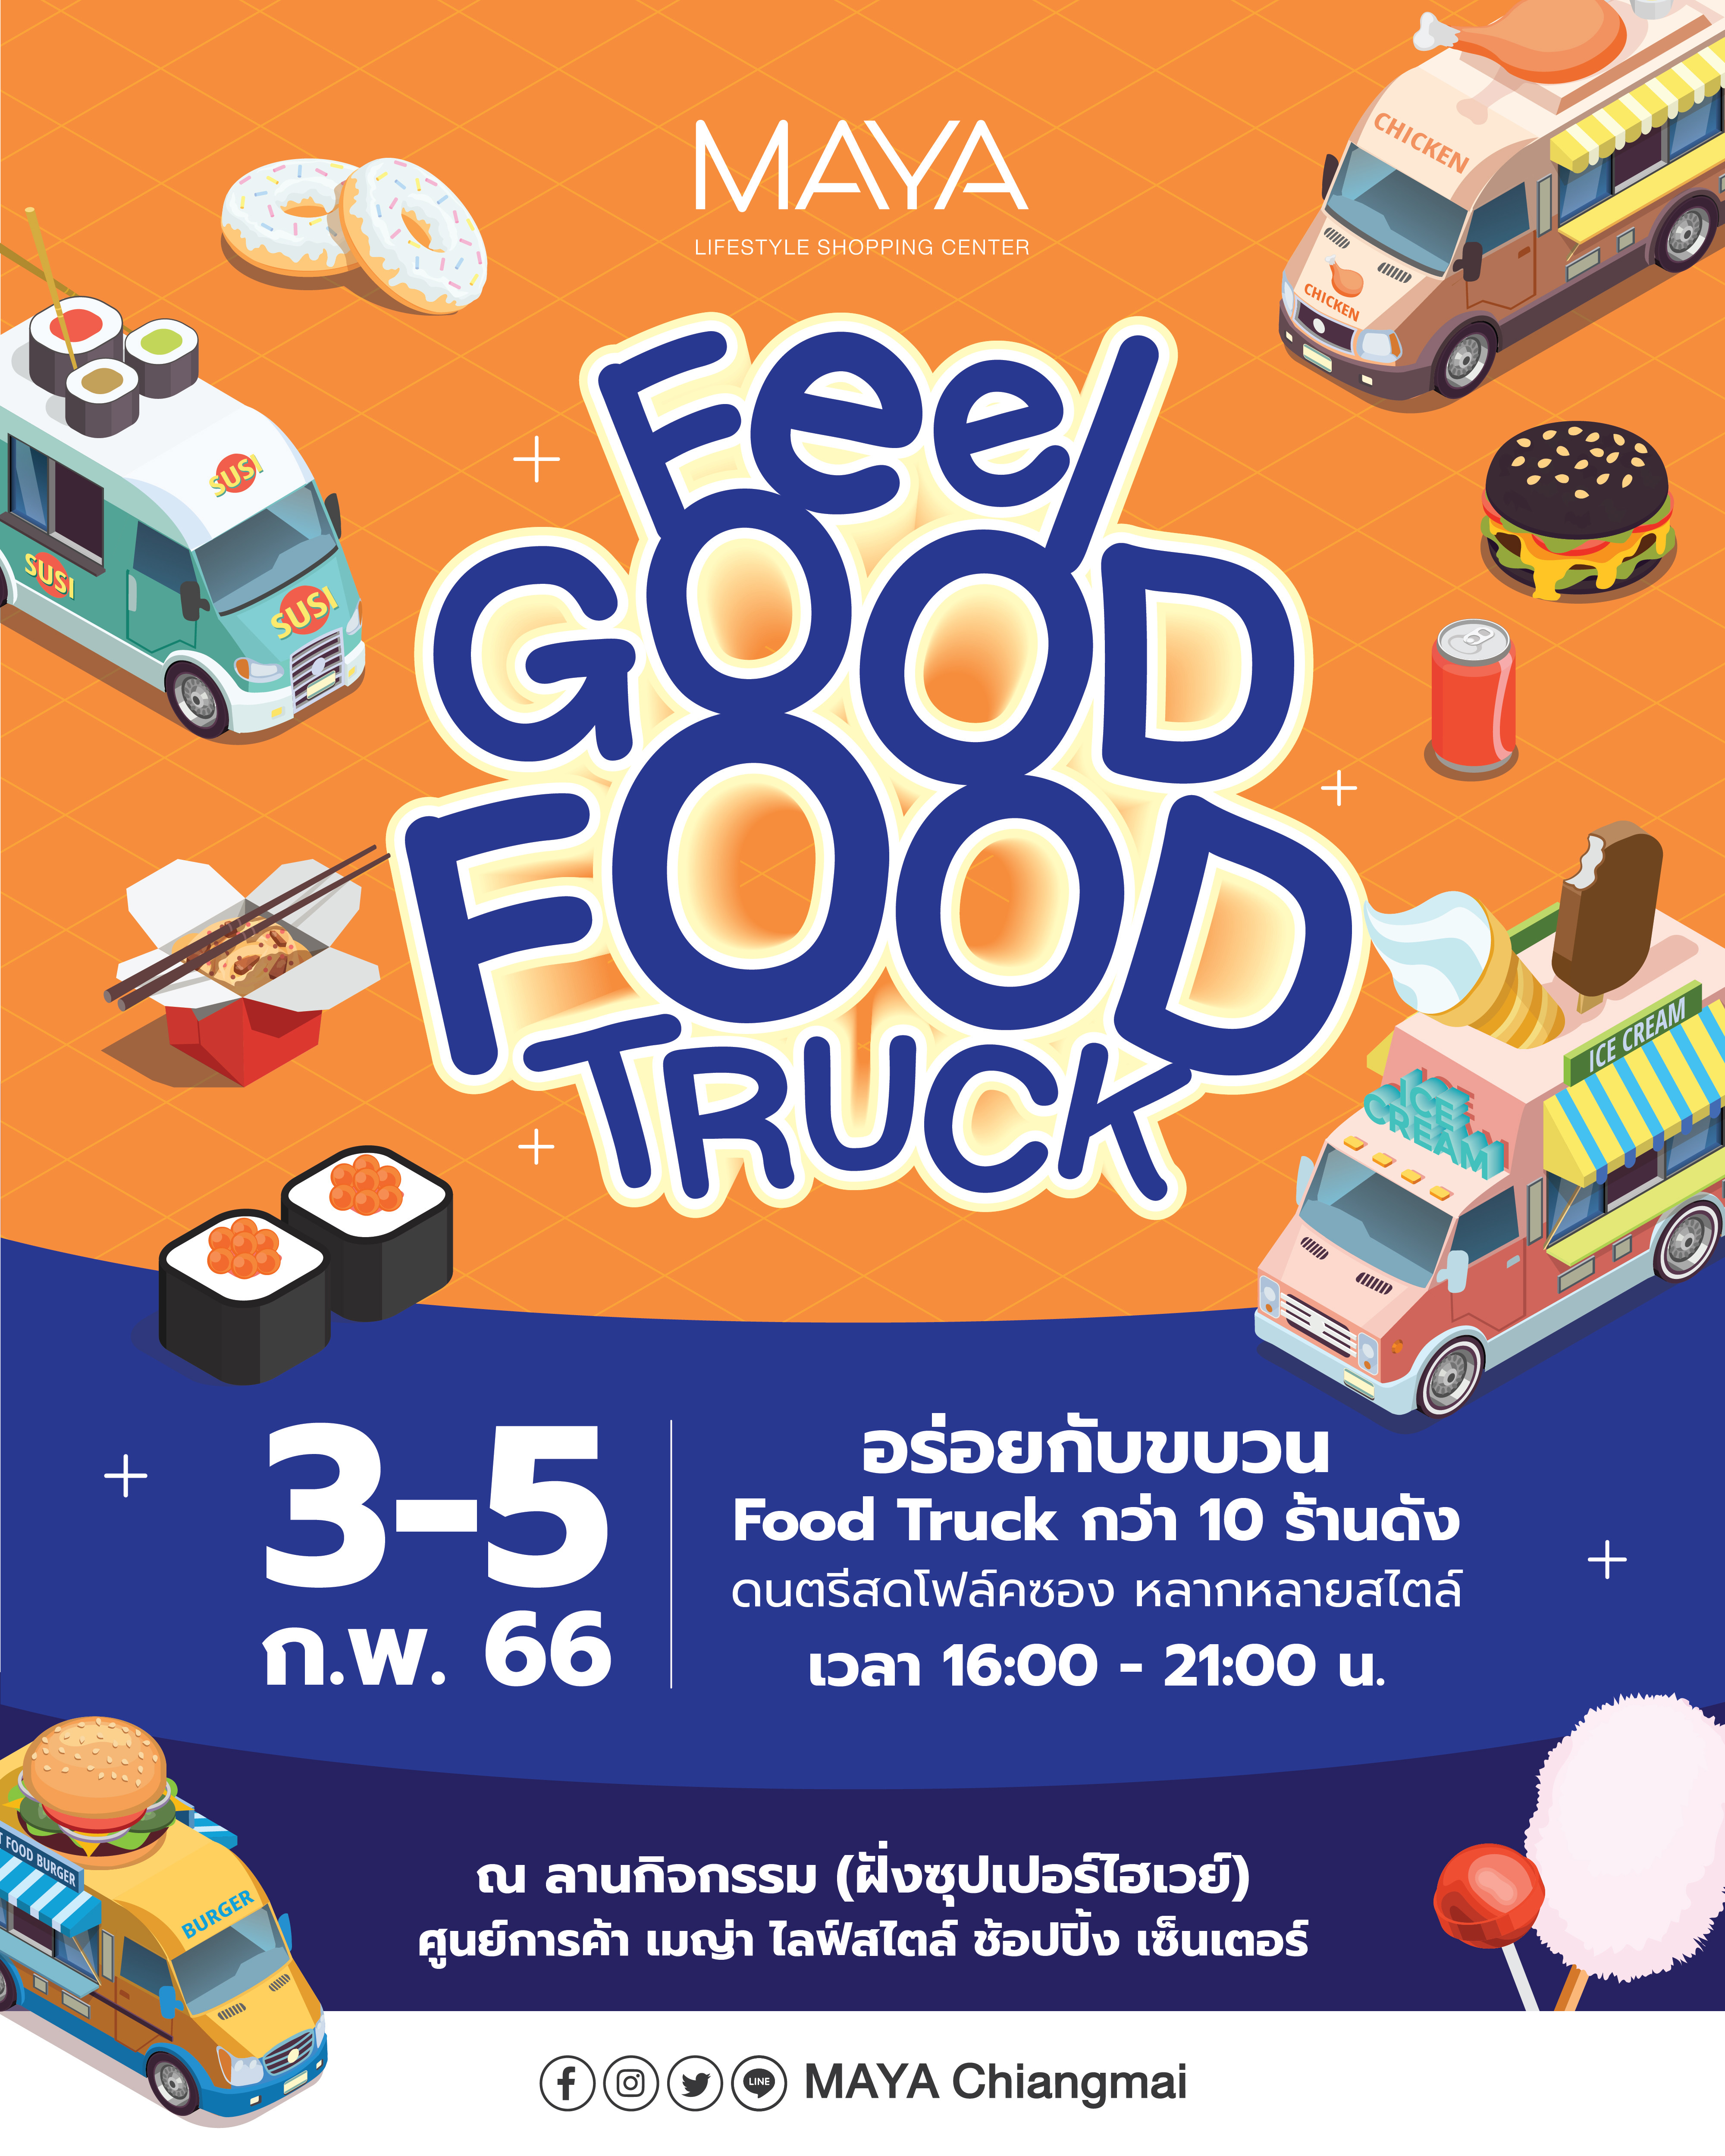 เมญ่าฯ ยกขบวนคาราวานความอร่อย! “Feel Good Food Truck” แบบจัดเต็ม! ระหว่างวันที่ 3-5 ก.พ. 66   